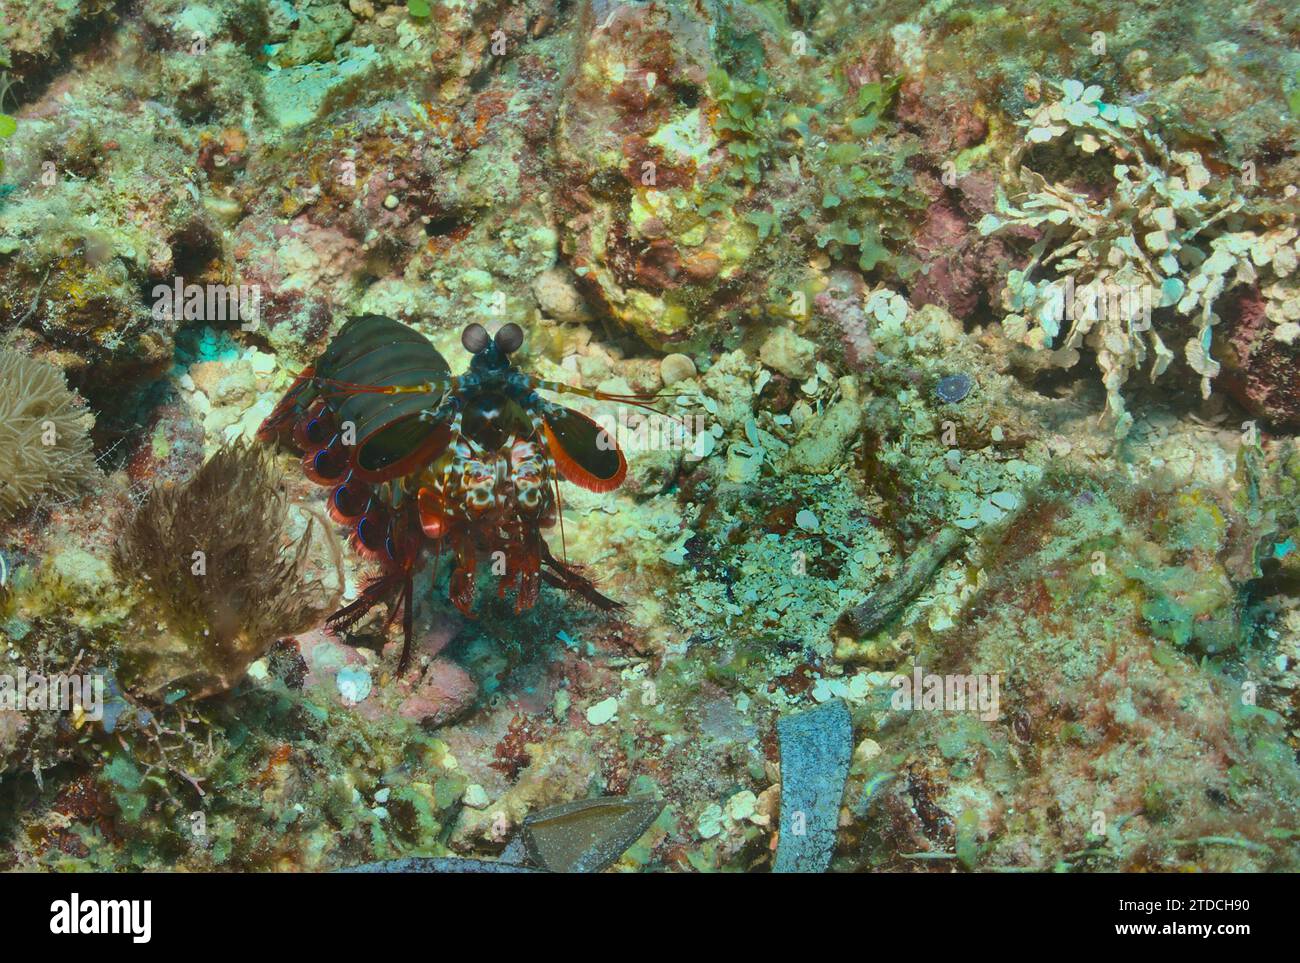 Farbenfrohe Pfauenmantis-Garnelen, die wachsam in den lebendigen Korallenriffen des watamu Marine Parks in kenia sind Stockfoto